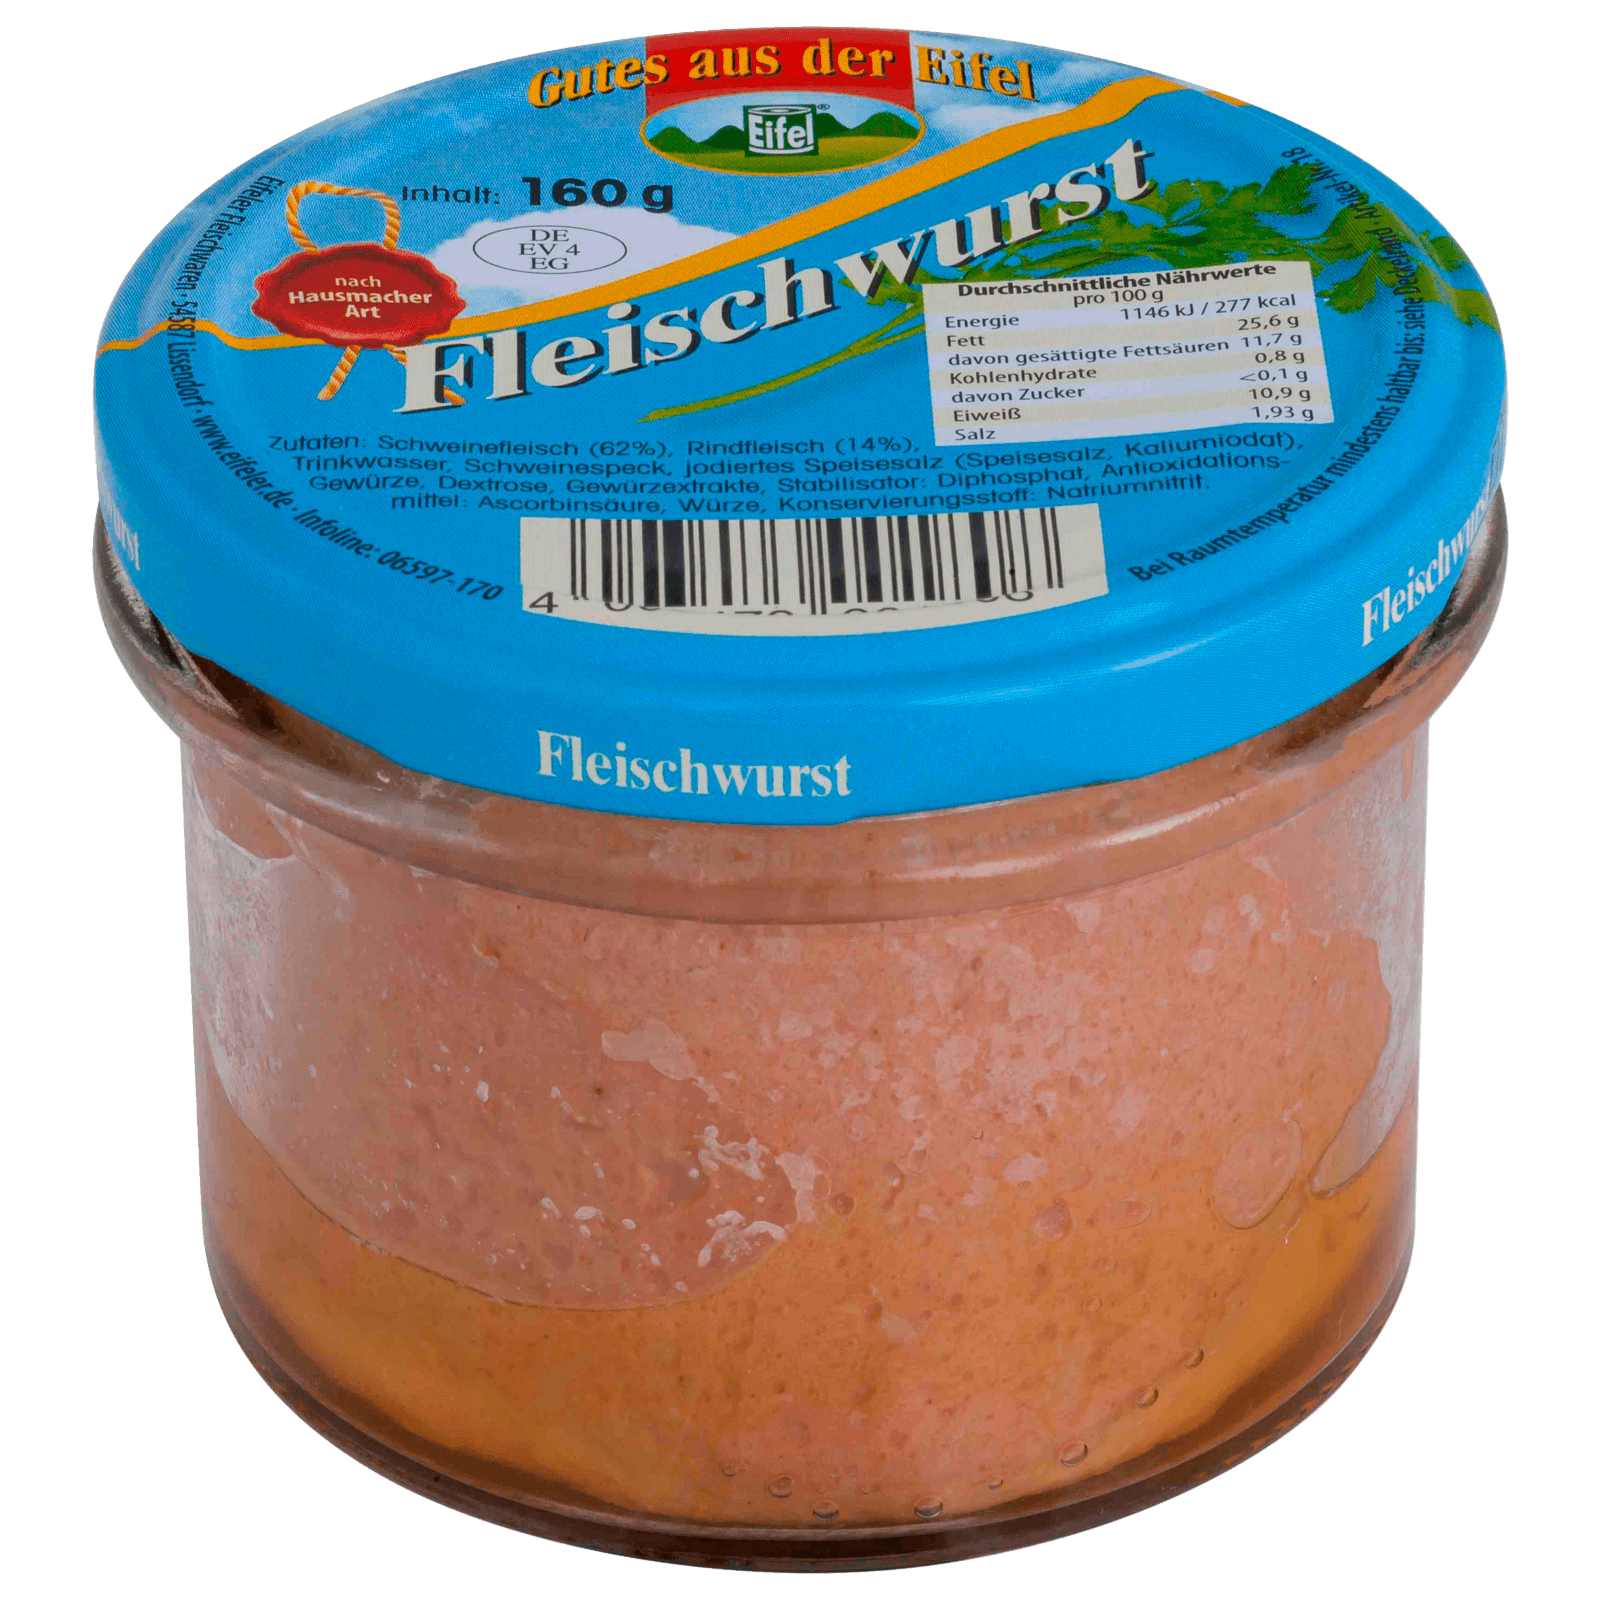 Gutes aus der Eifel Fleischwurst 160g bei REWE online bestellen!